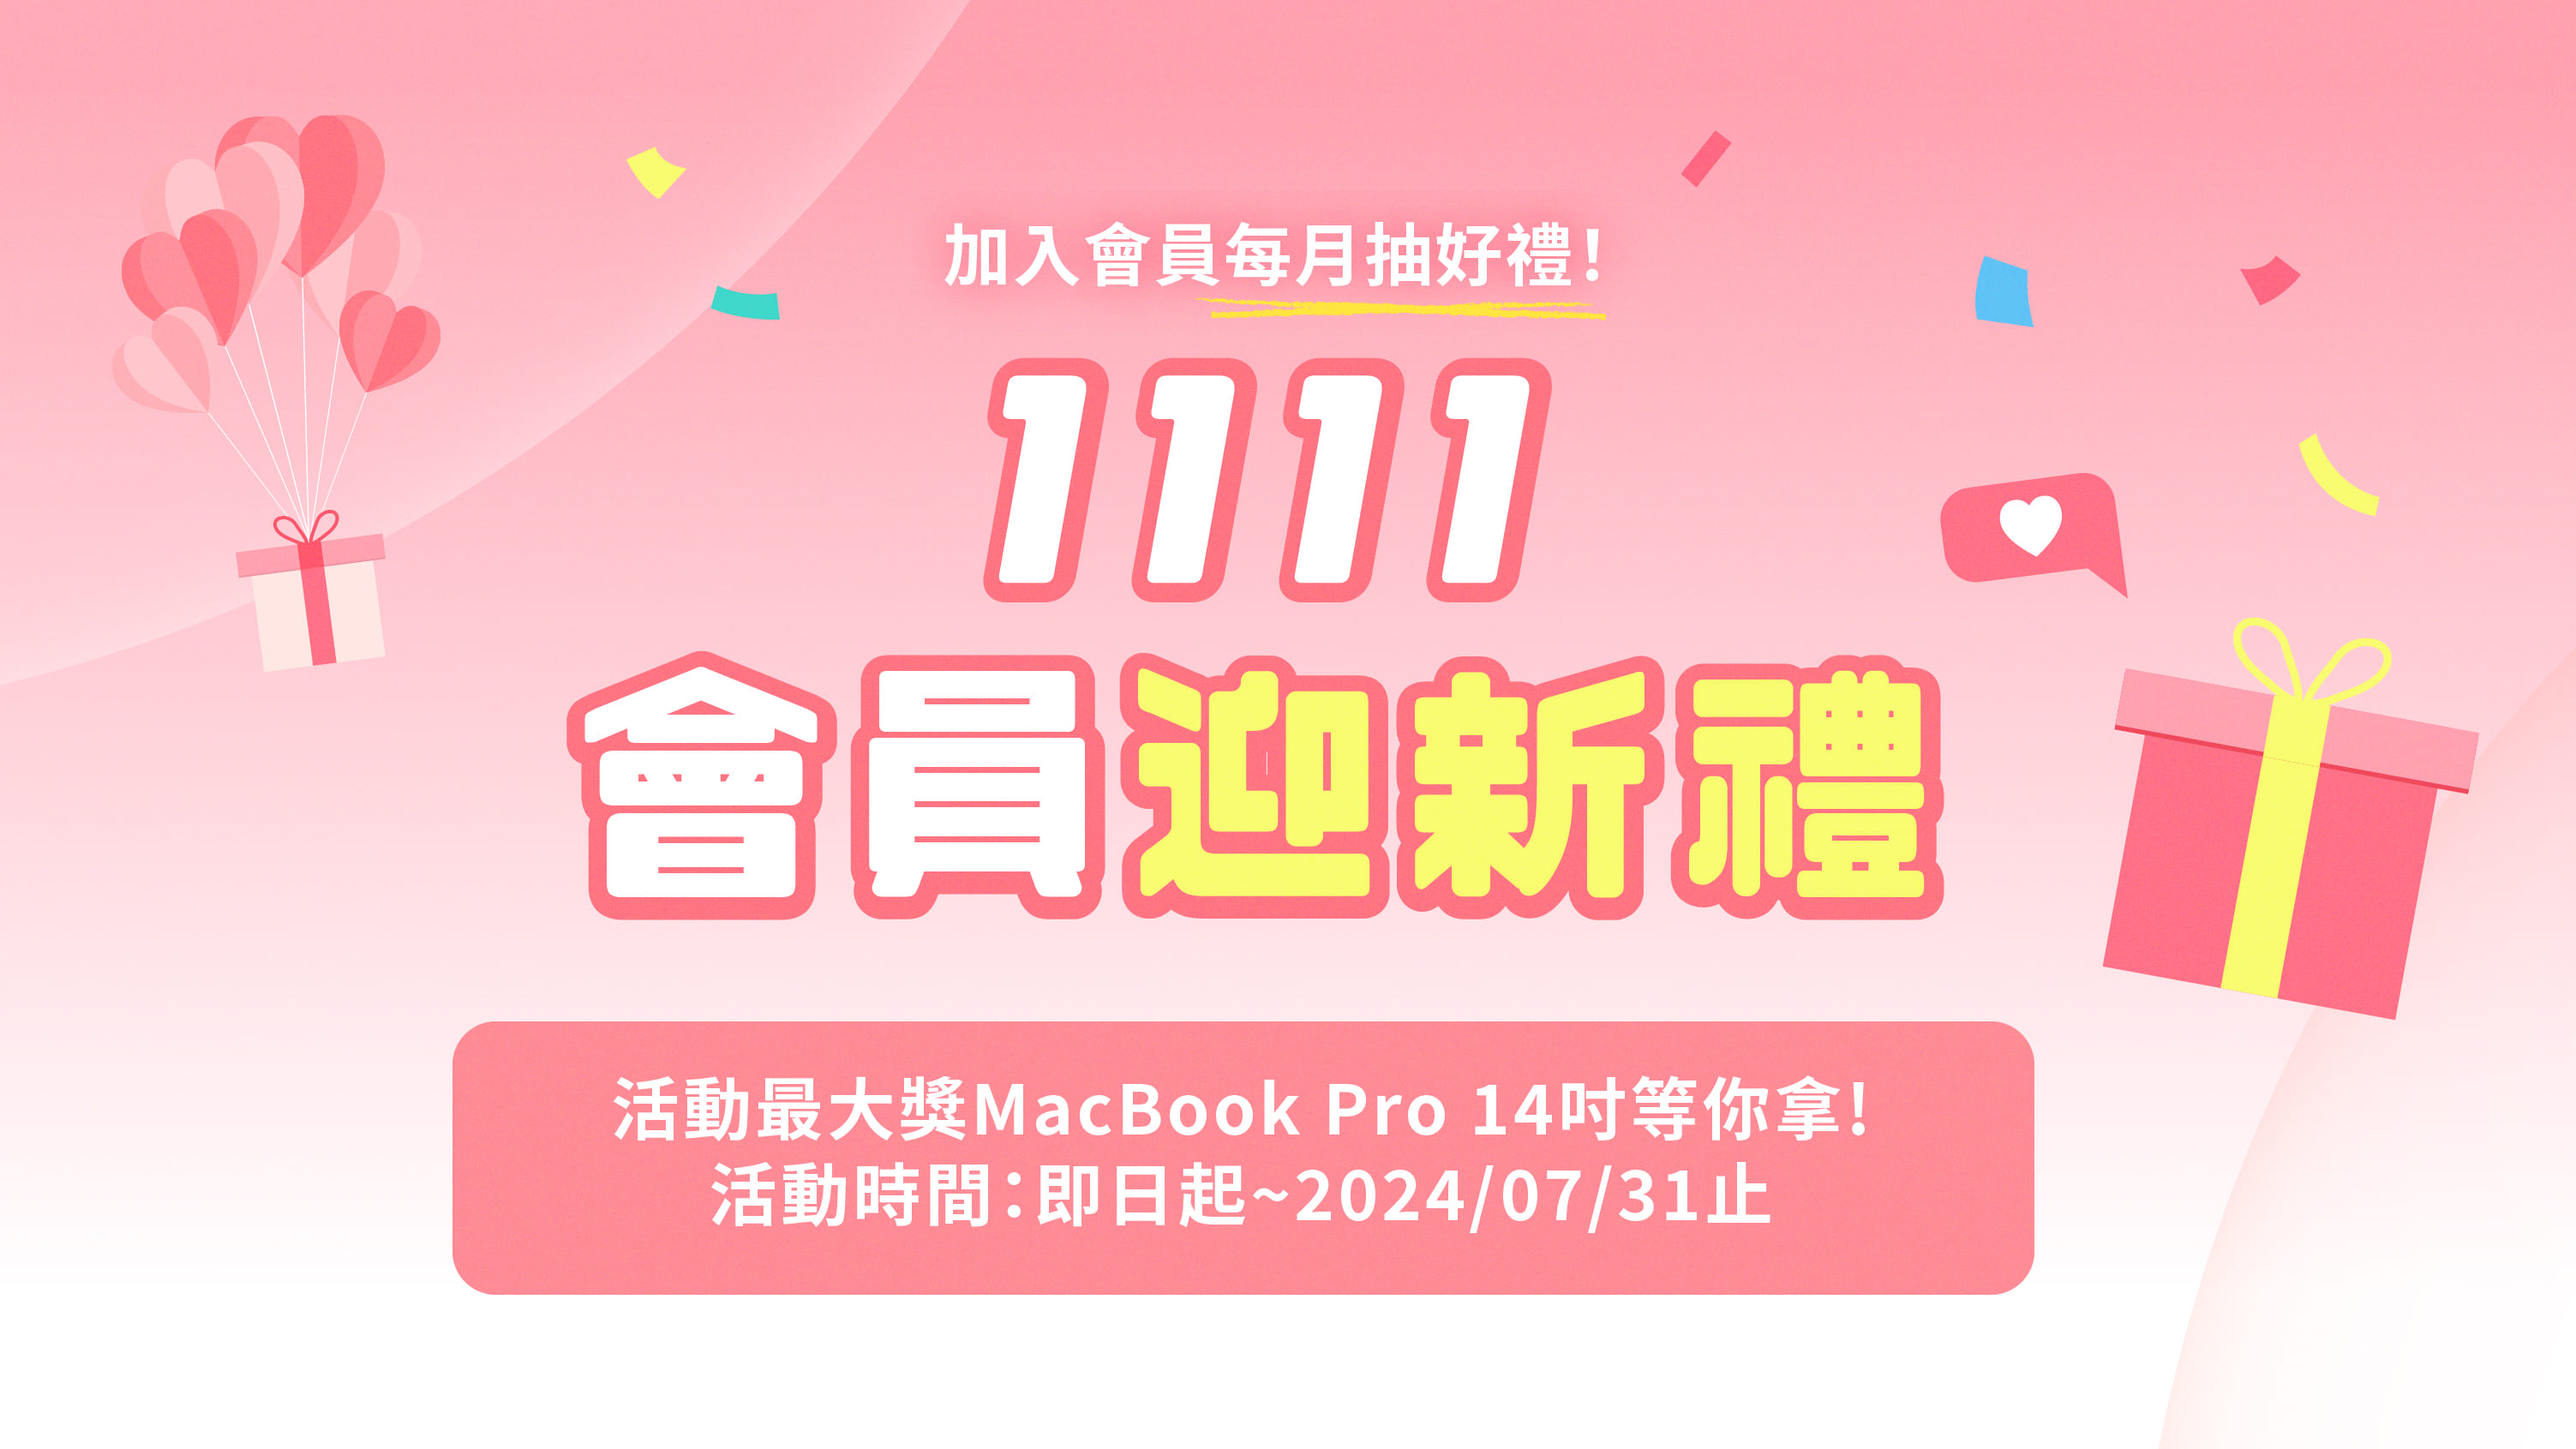 1111會員迎新禮每月有獎 最後再抽MacBook Pro 14吋-1111會員限定